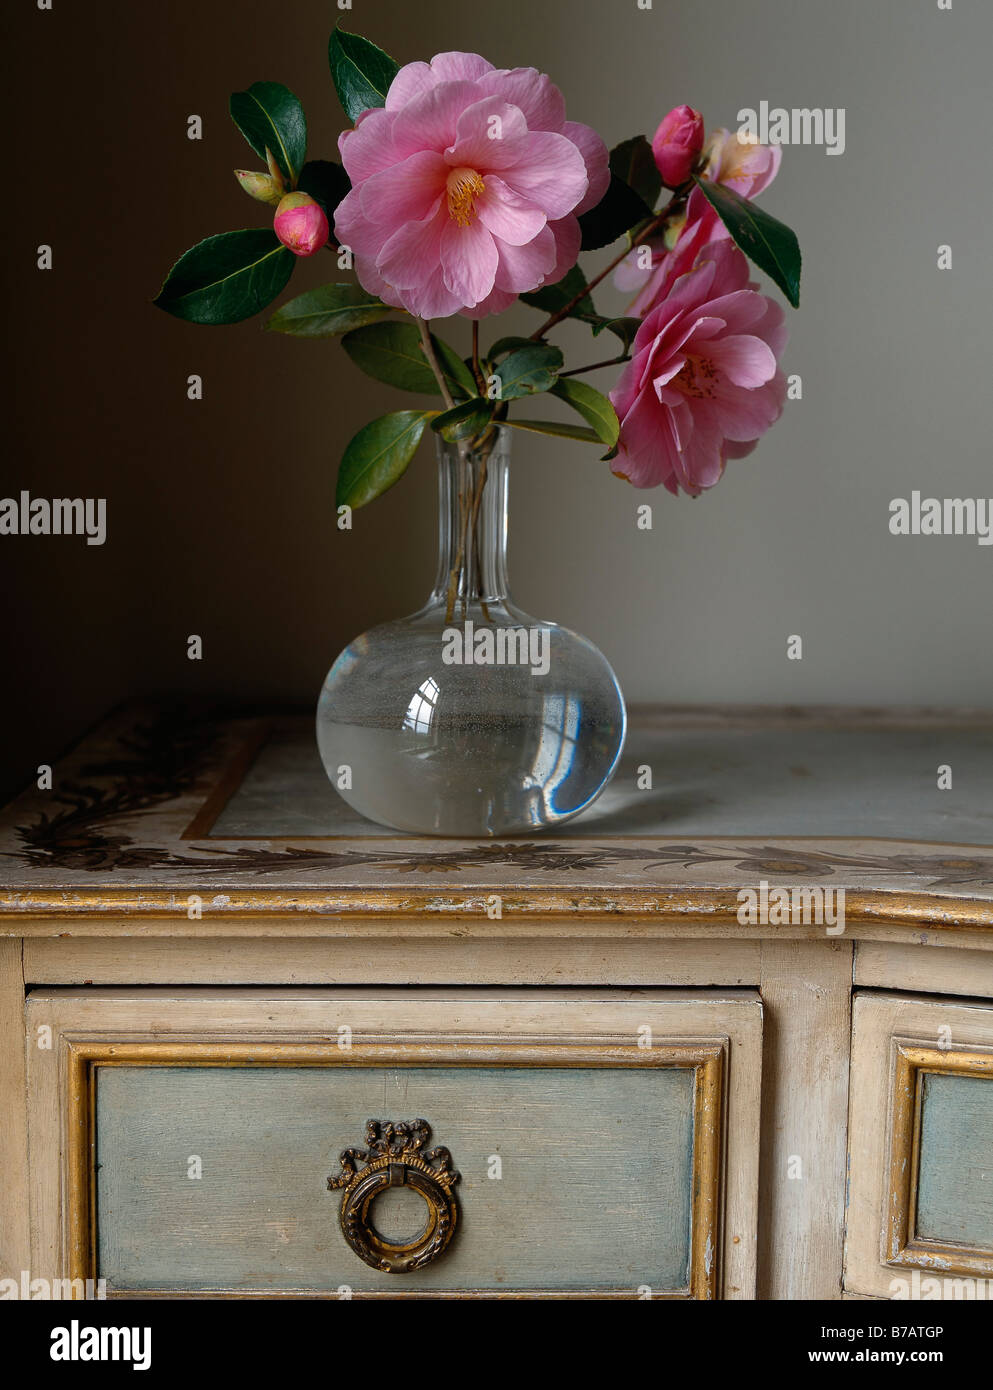 Toujours la vie de fleurs de camellia roses dans un vase en verre, sur un bureau ancien Banque D'Images